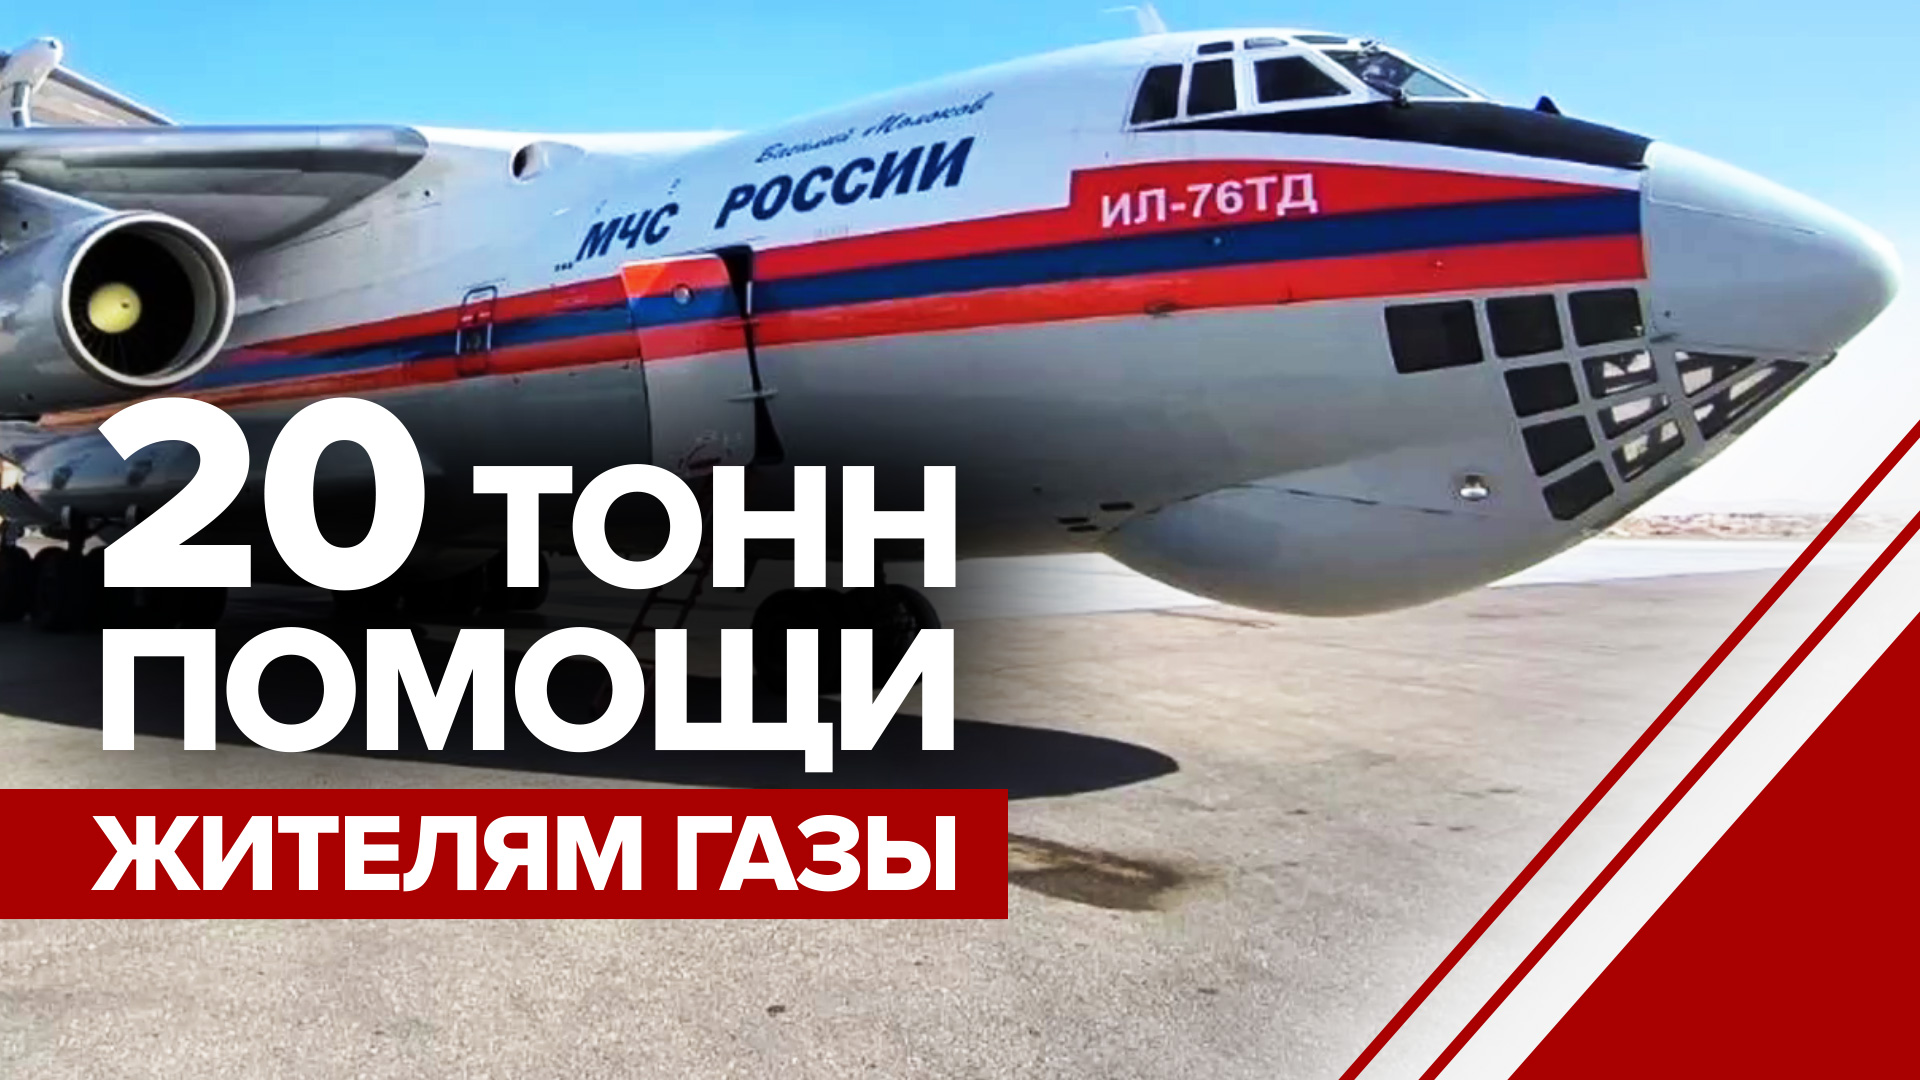 Ил-76 МЧС России доставил 20 тонн гумпомощи жителям Газы — видео